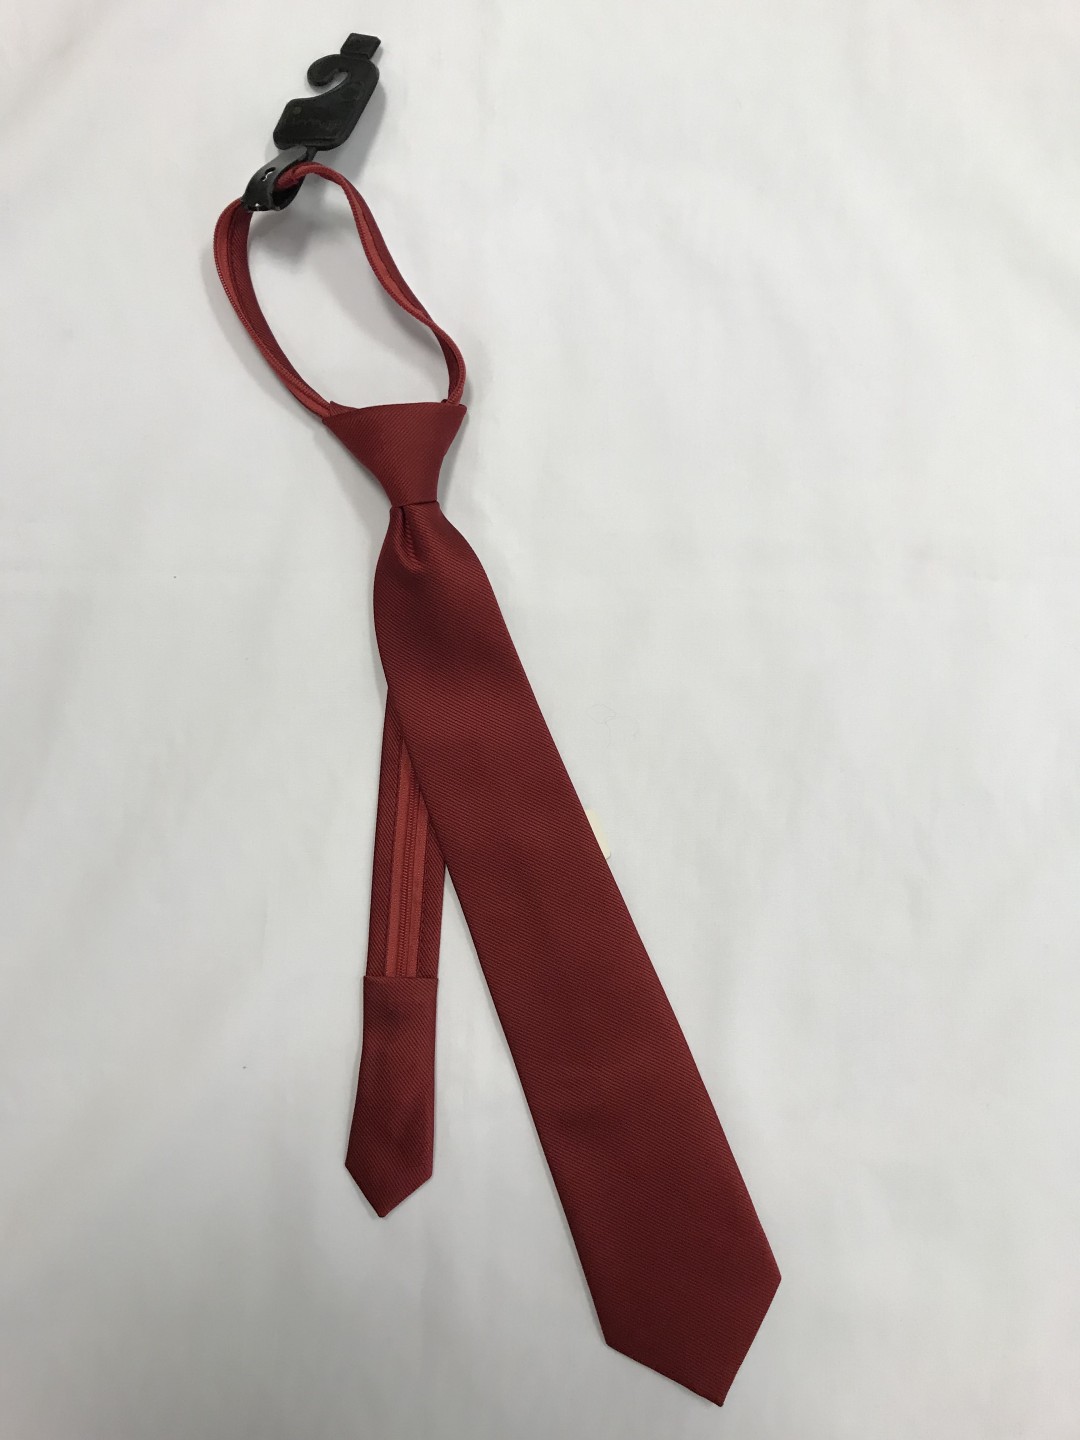 Red Zip Tie Items